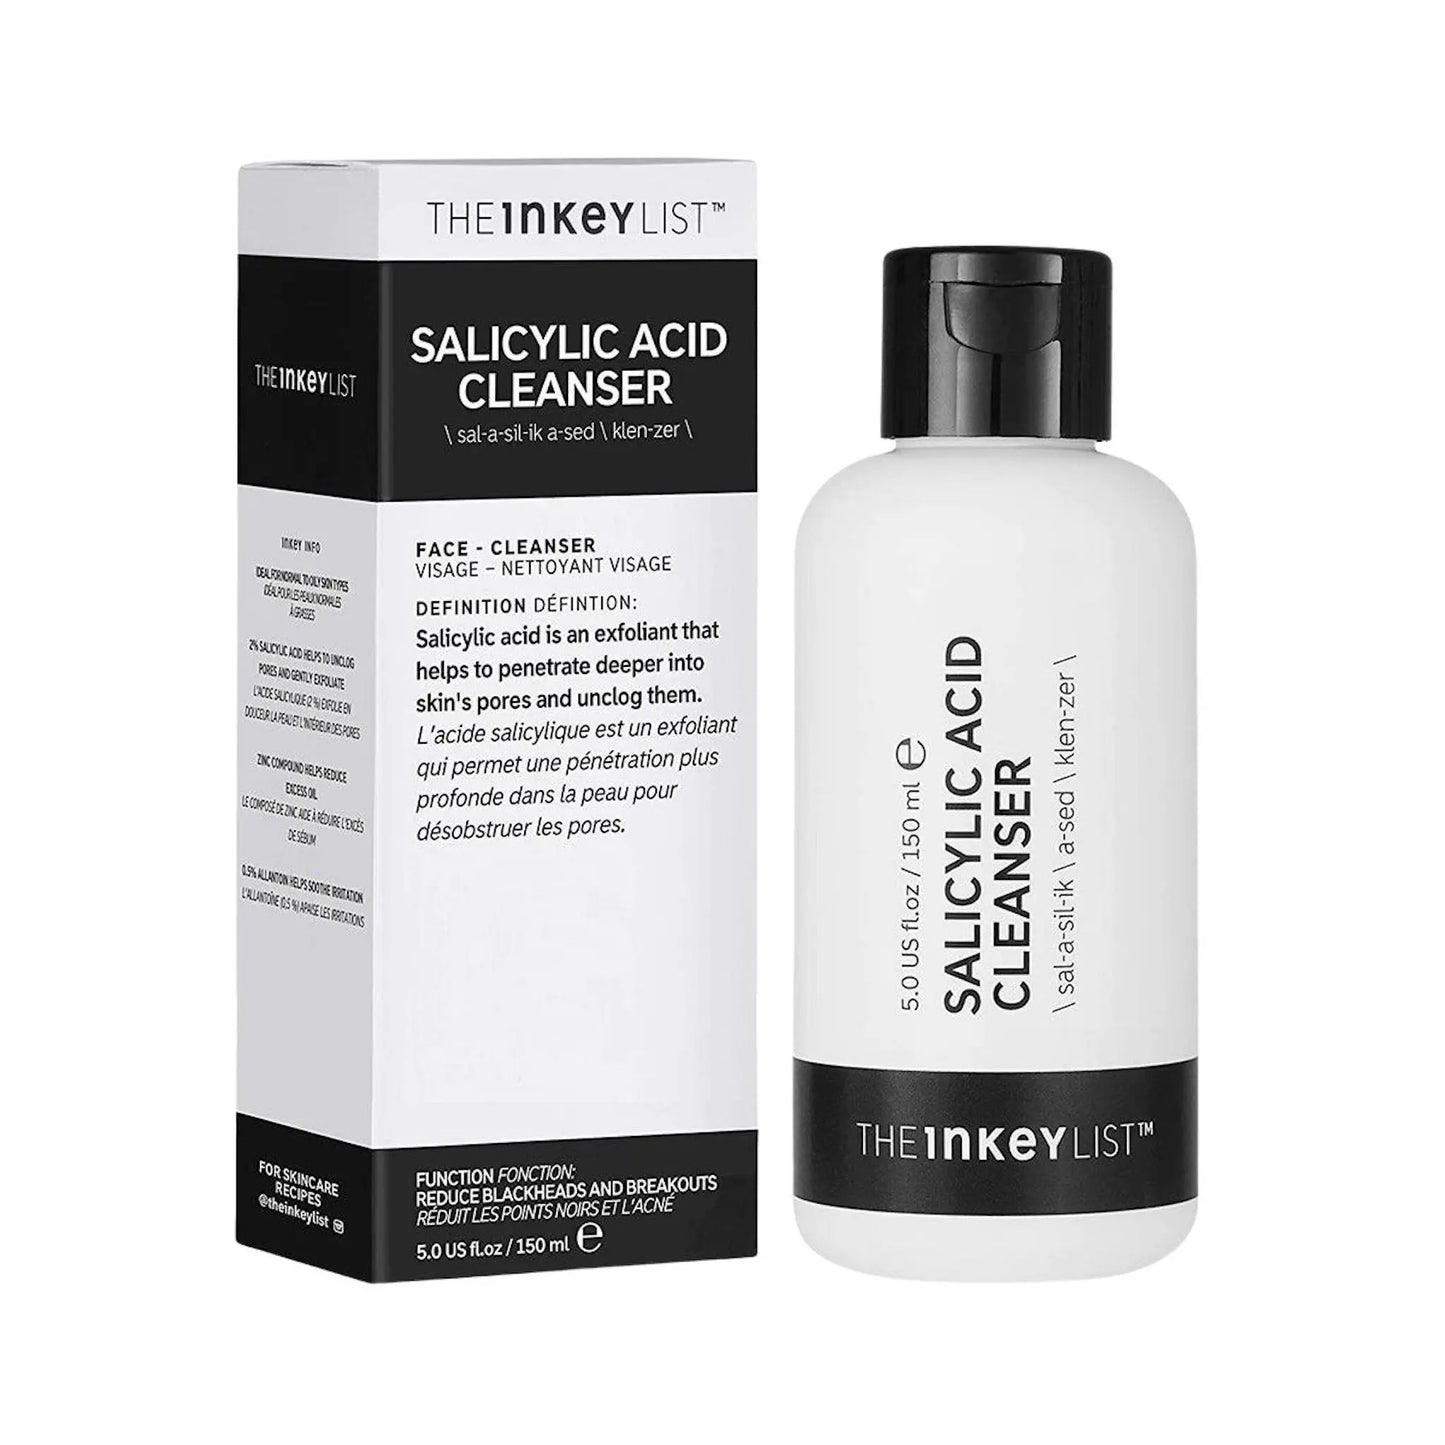 THE INKEY LIST Salicylic Acid Acne + Pore Cleanser THE INKEY LIST